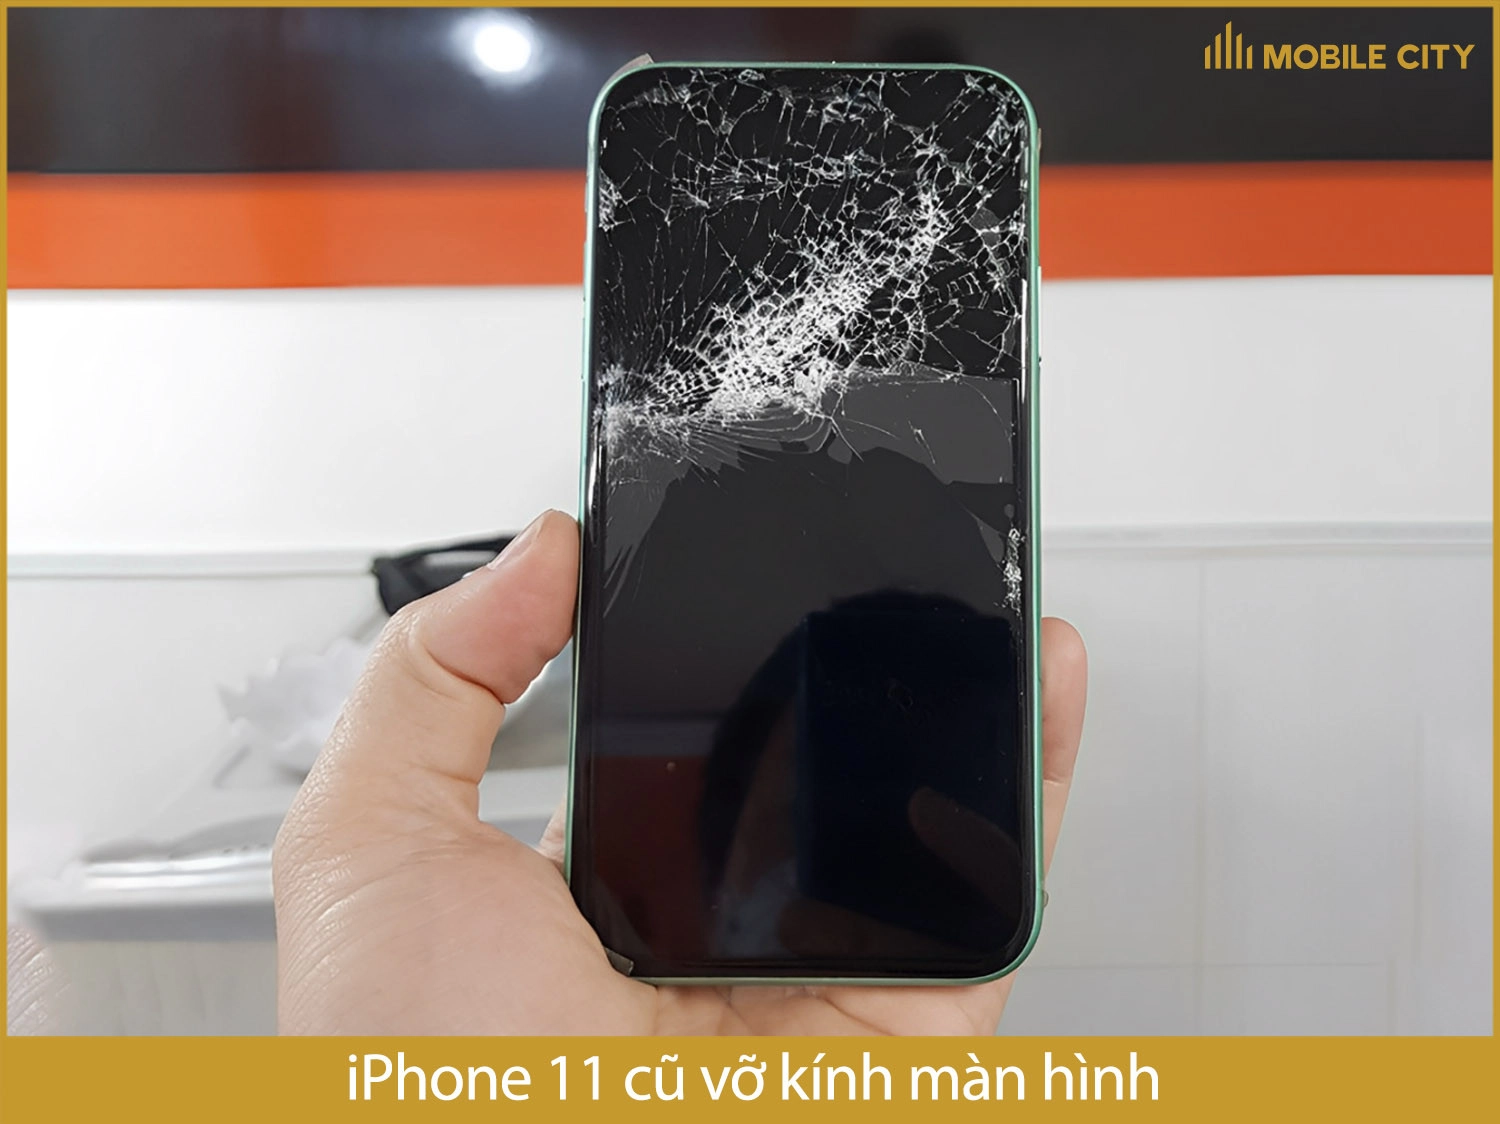 iPhone 11 vỡ kính màn hình